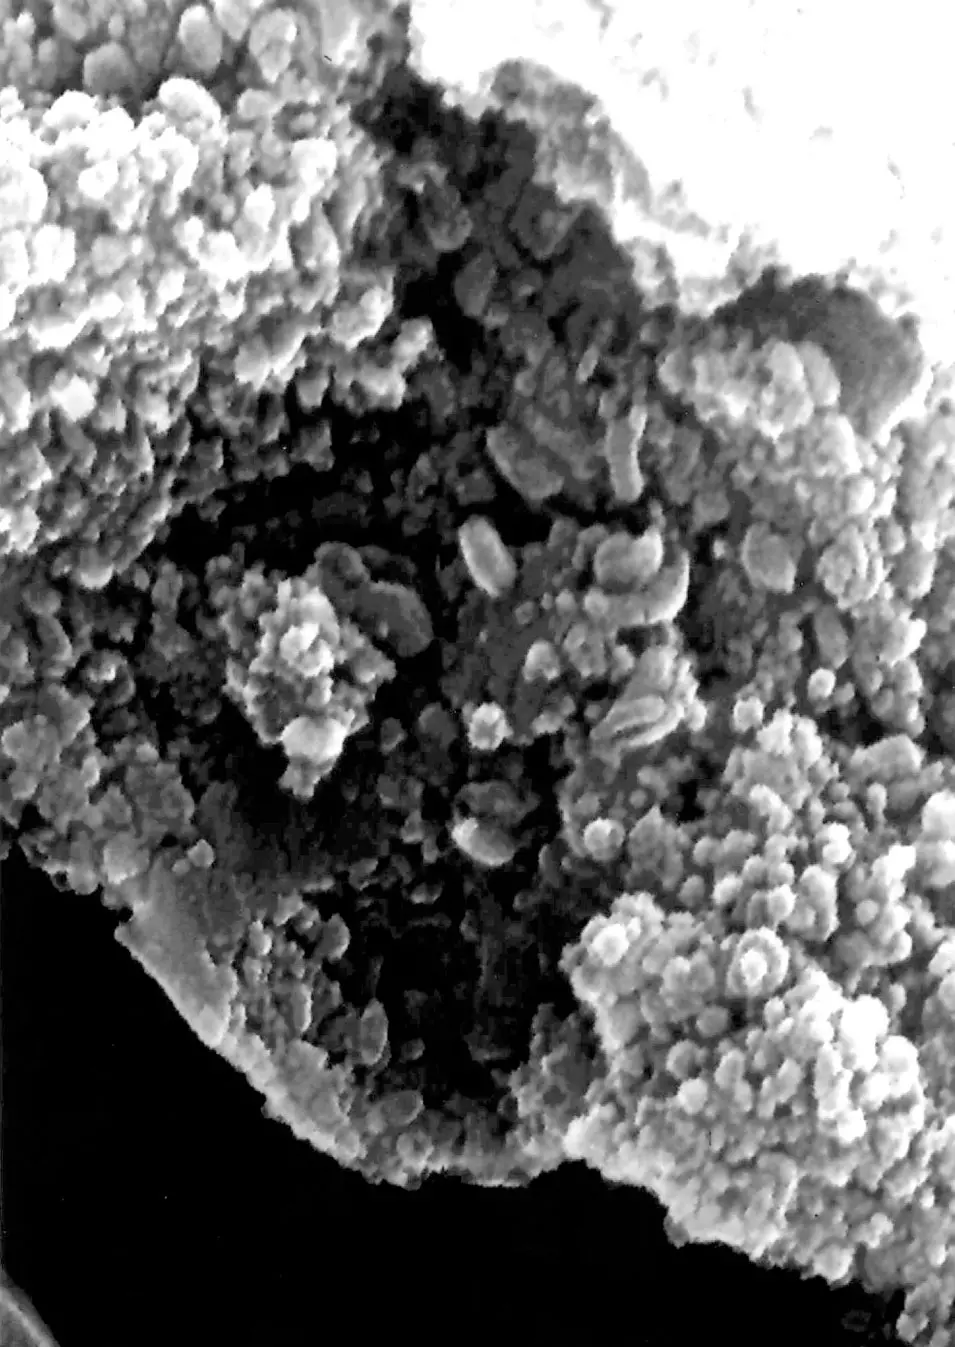 מבנים חידתיים שצולמו על גבי מטאוריט שמקורו, על פי הערכות, ממאדים. התמונה הוצגה על ידי נאס"א ב-1996. האם מדובר בעקבות של אורגניזמים פשוטים?